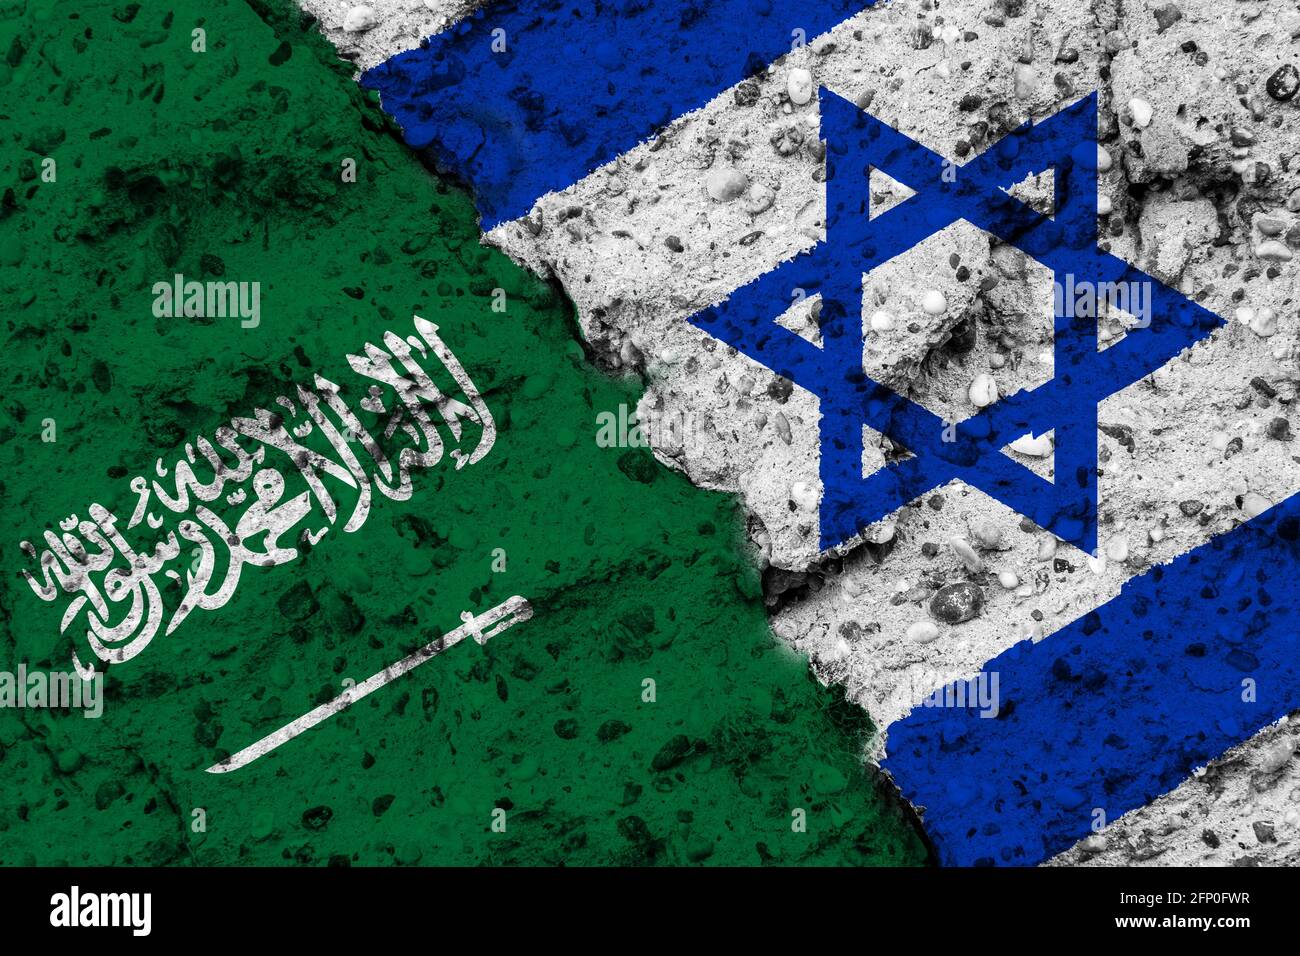 Konzept einer Beziehung zwischen Saudi-Arabien und Israel mit bemalten Fahnen an einer rauen Wand mit einem Riss Stockfoto